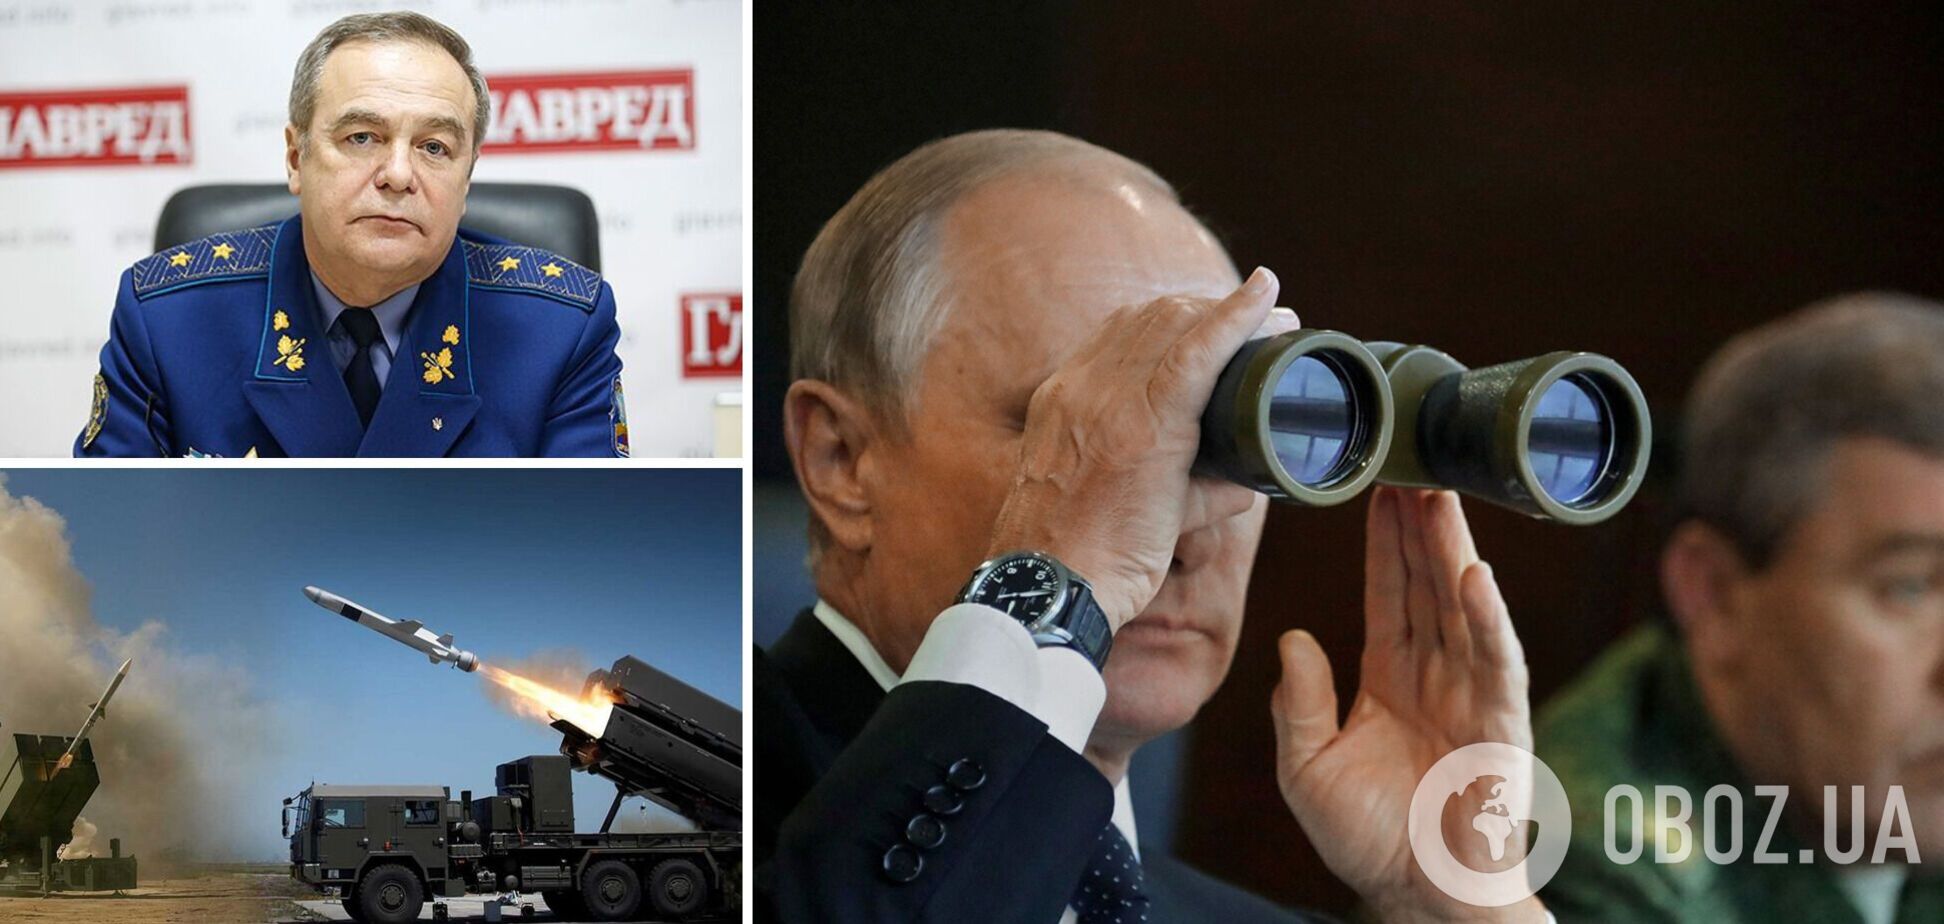 Генерал Романенко: ситуация опасная, армия Путина может опередить ВСУ. Интервью